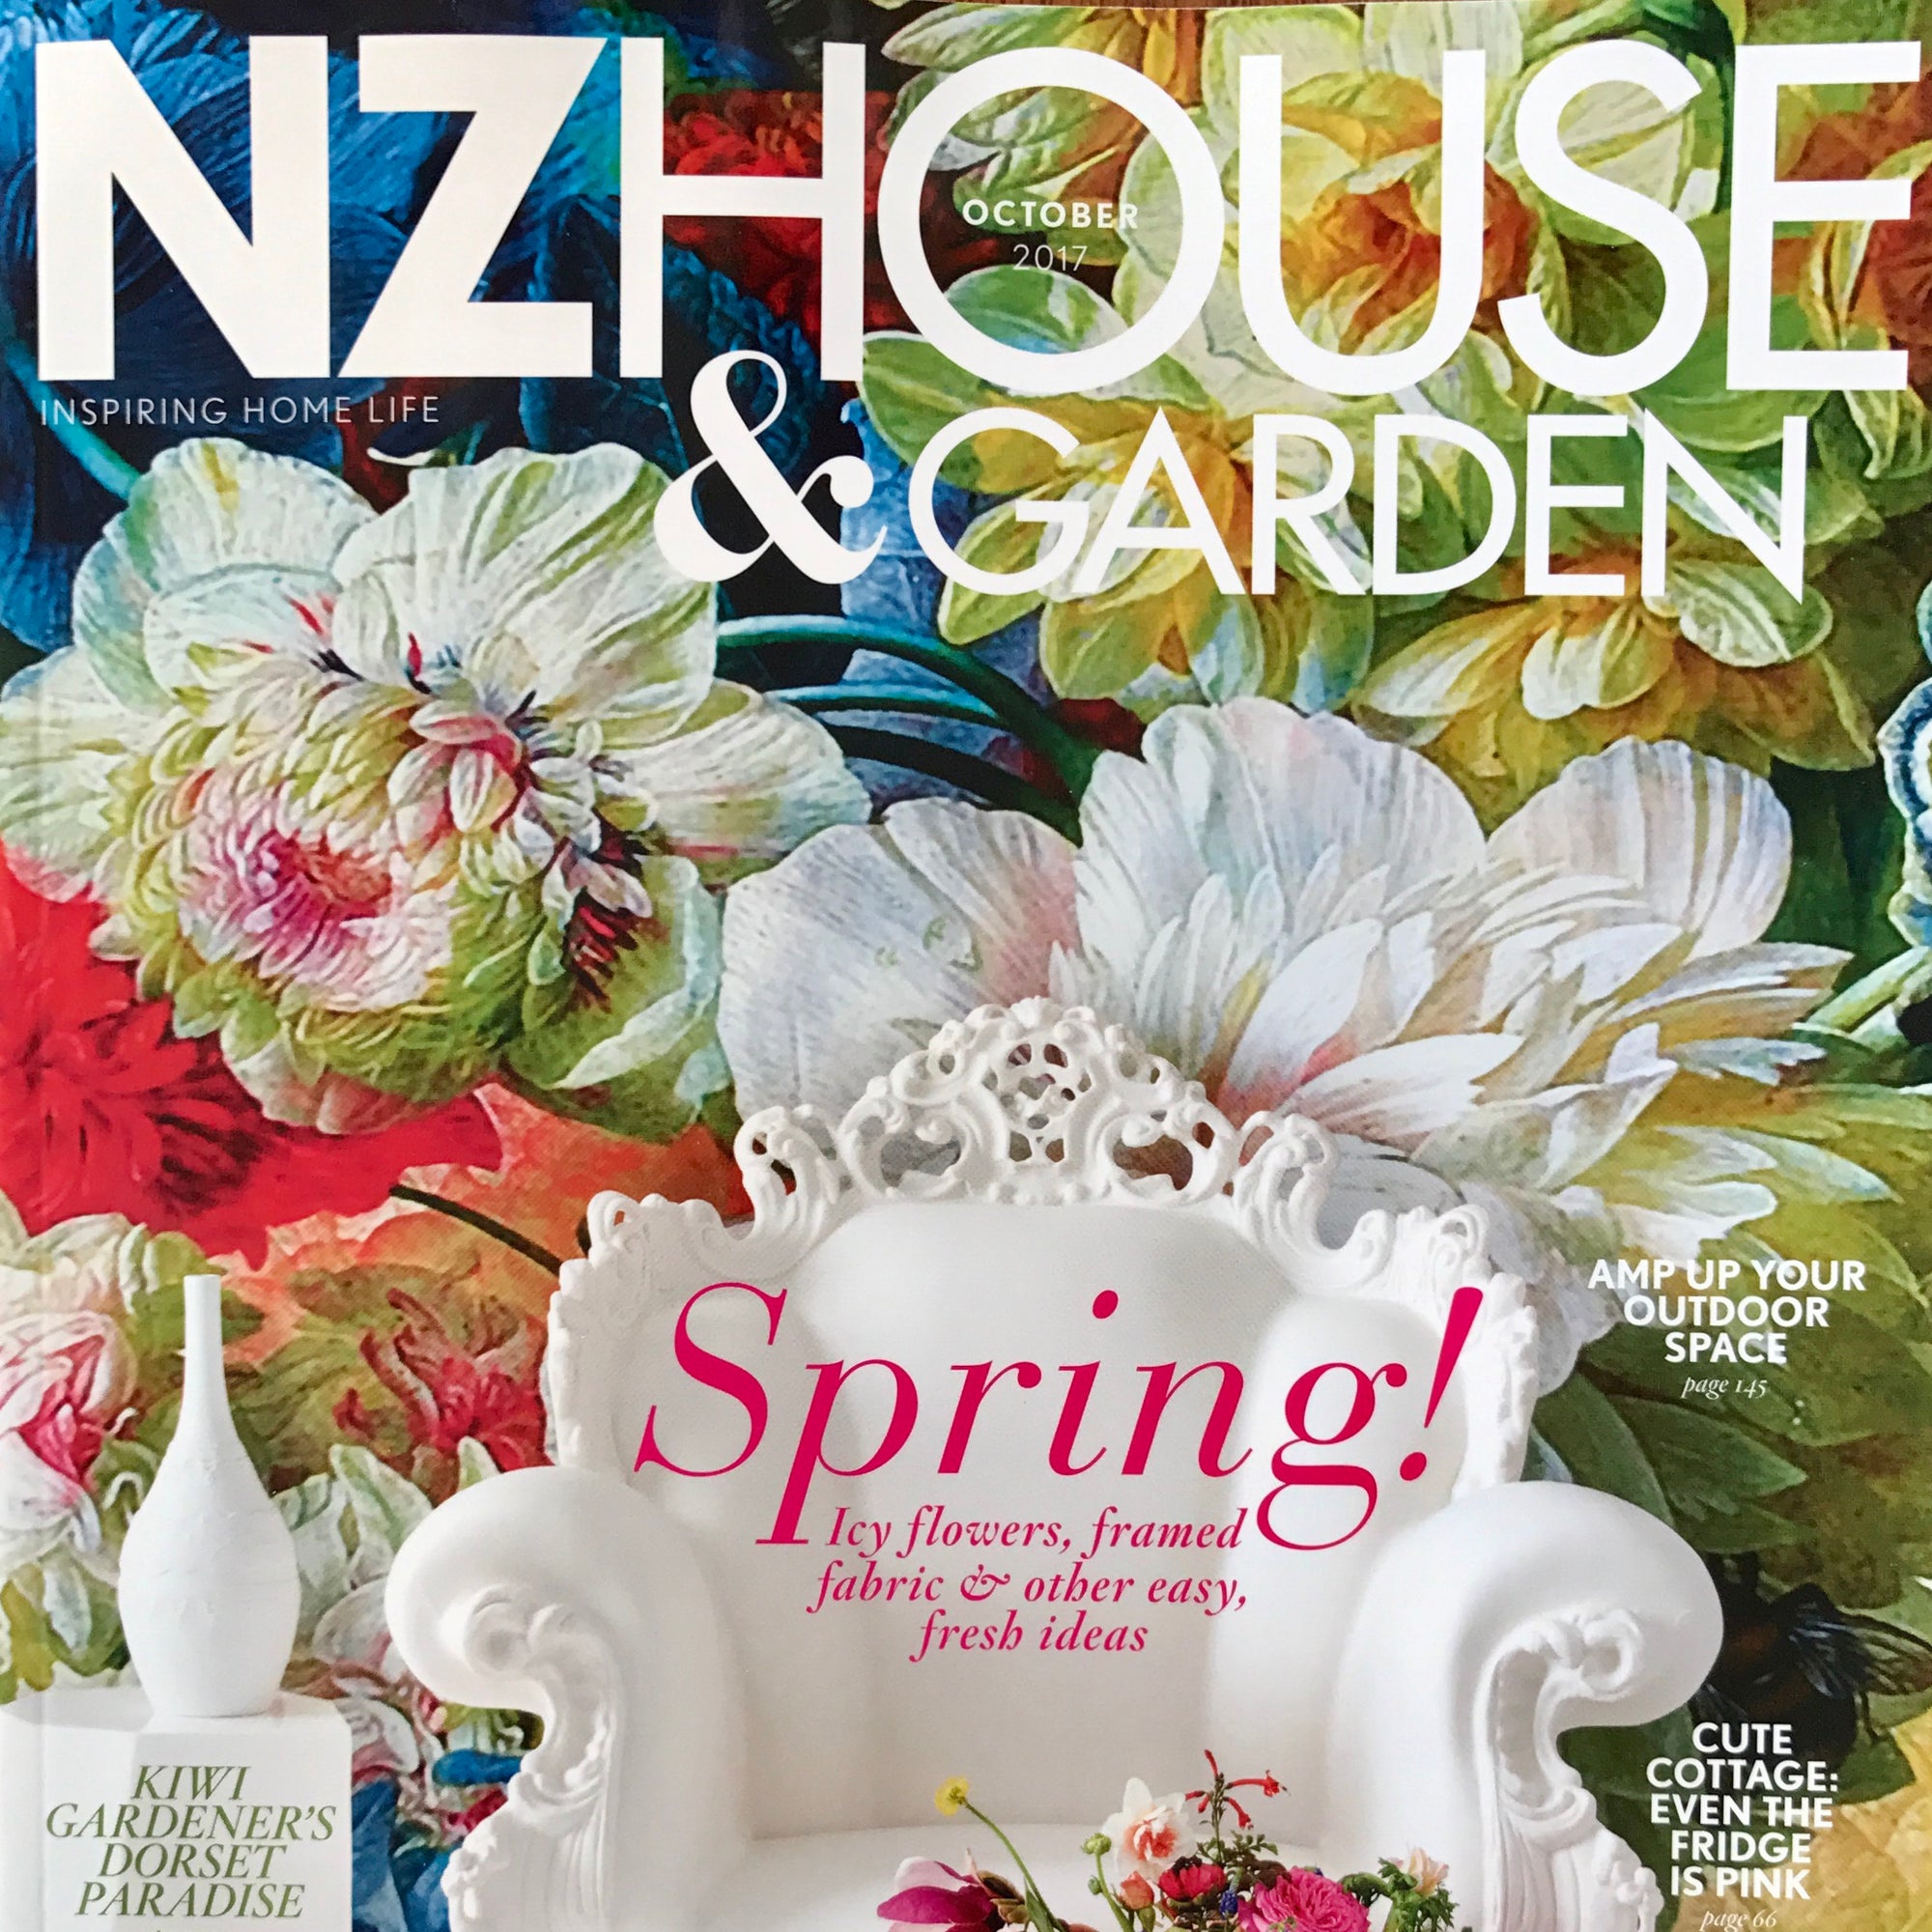 NZ House & Garden editorial